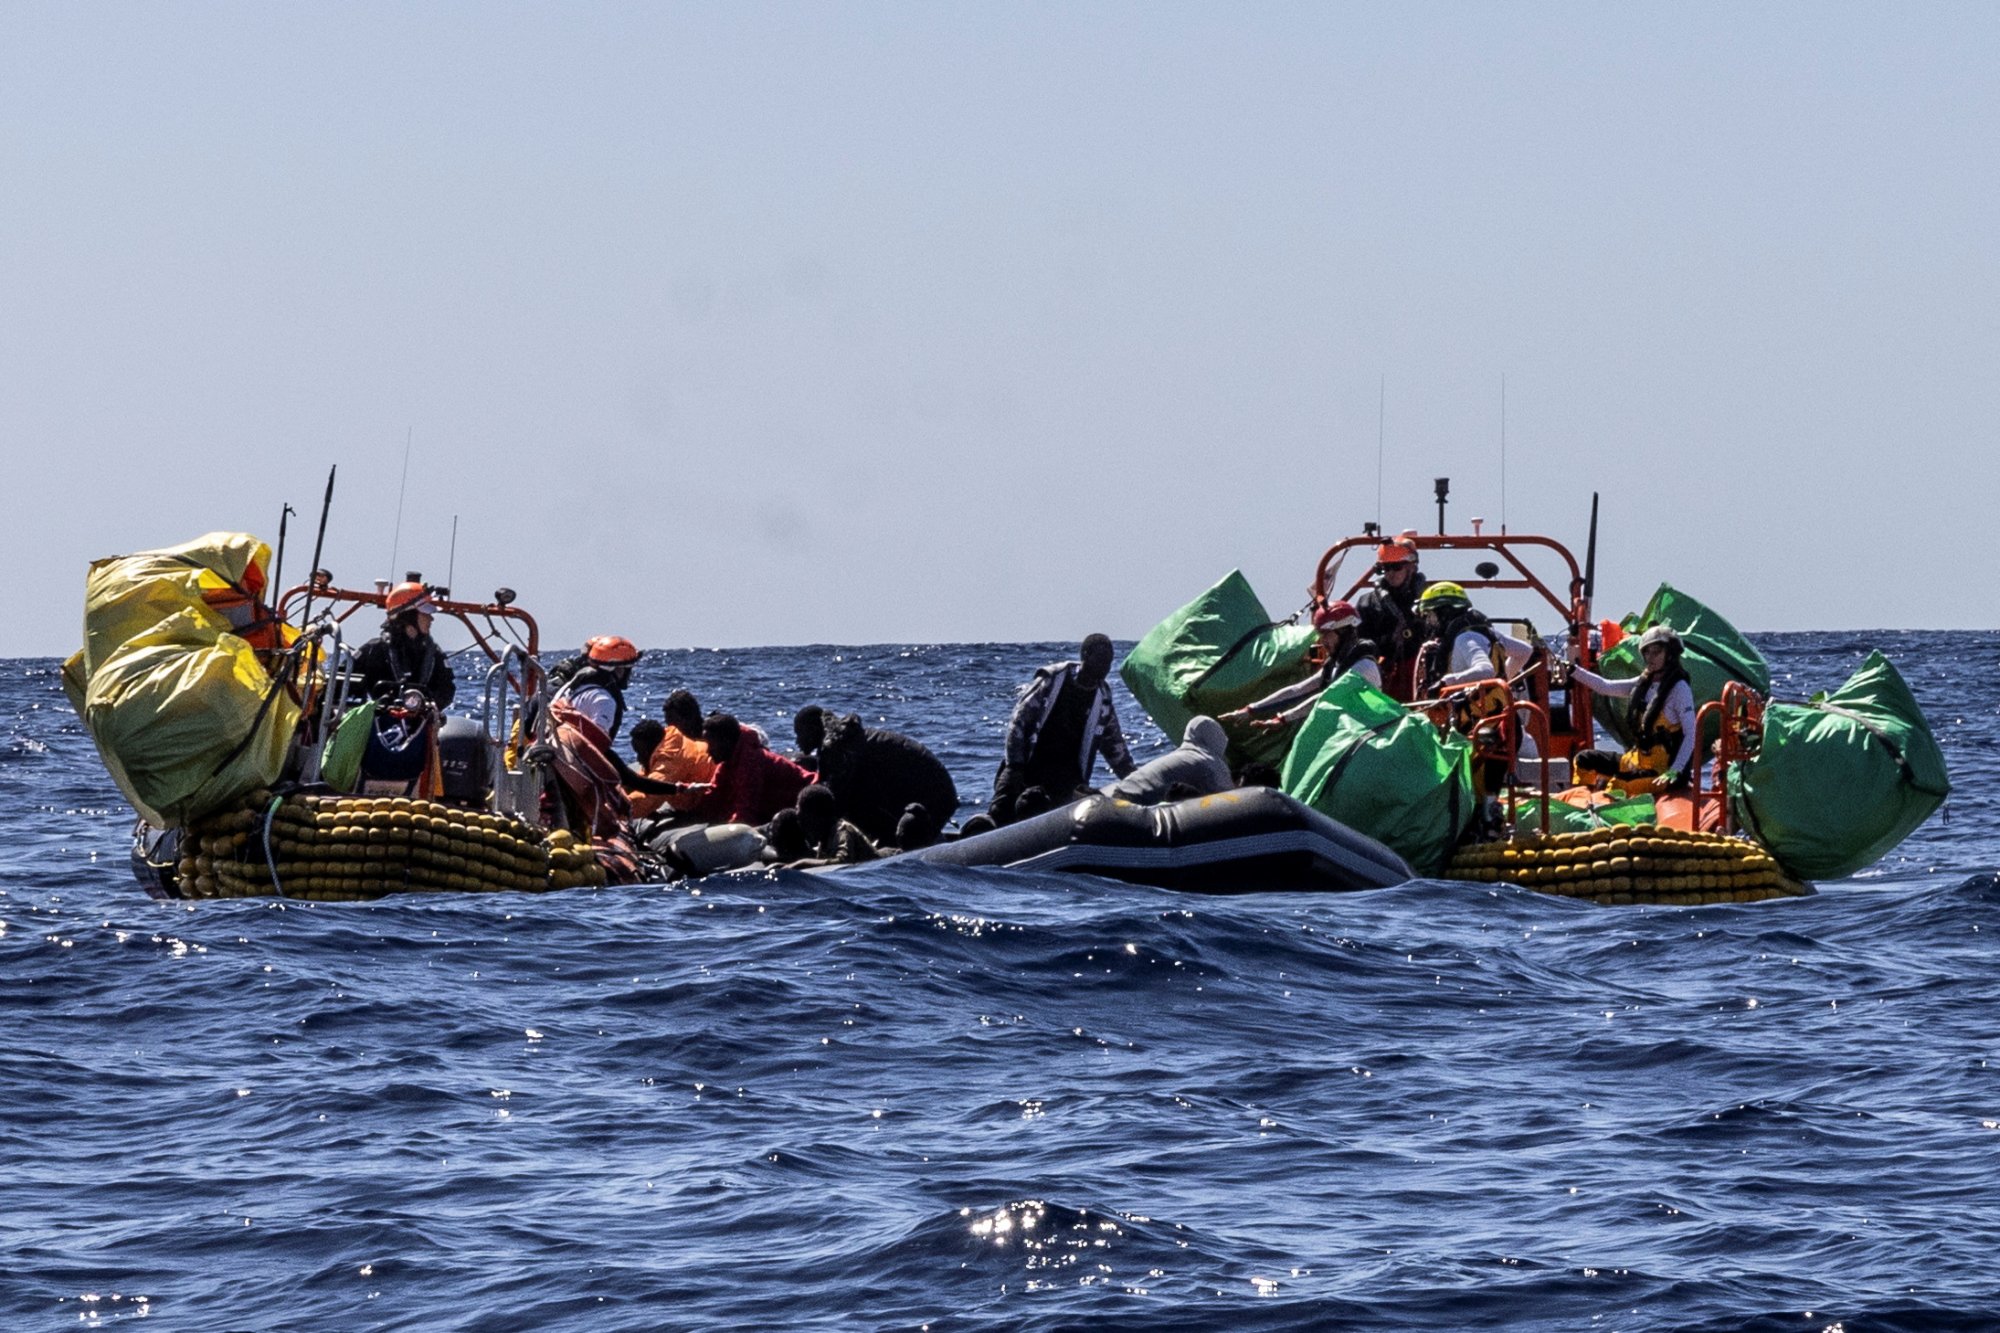 Μεσόγειος: Εξήντα μετανάστες νεκροί μετά από 7 ημέρες περιπλάνησης - Διασώθηκαν 113